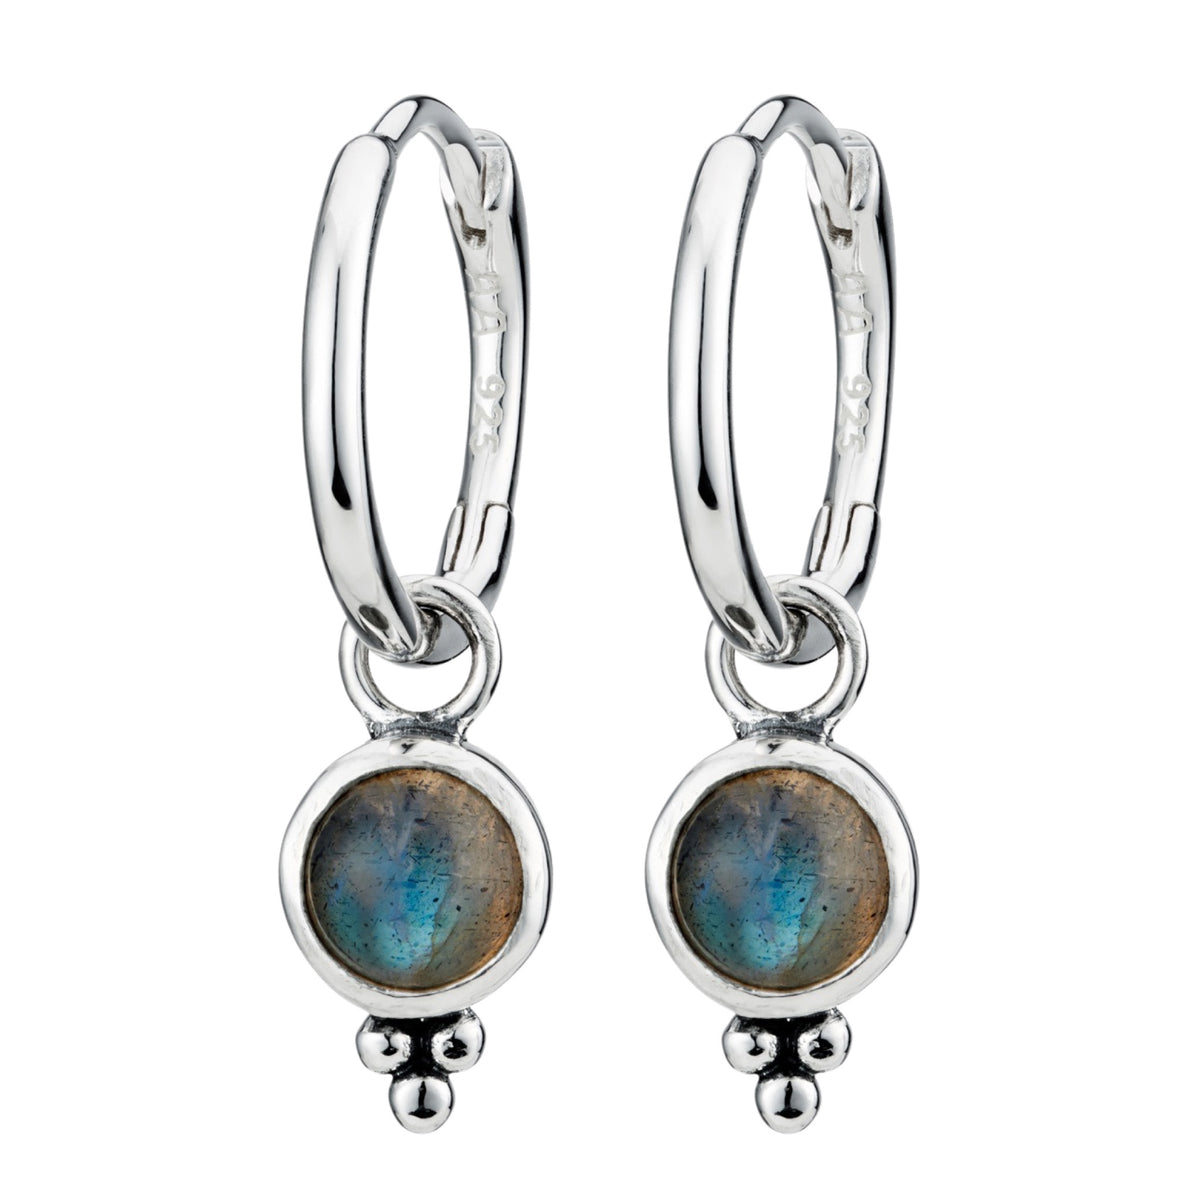 Sterling silver labradorite hoop earrings boho bohemian jewellery jewelry